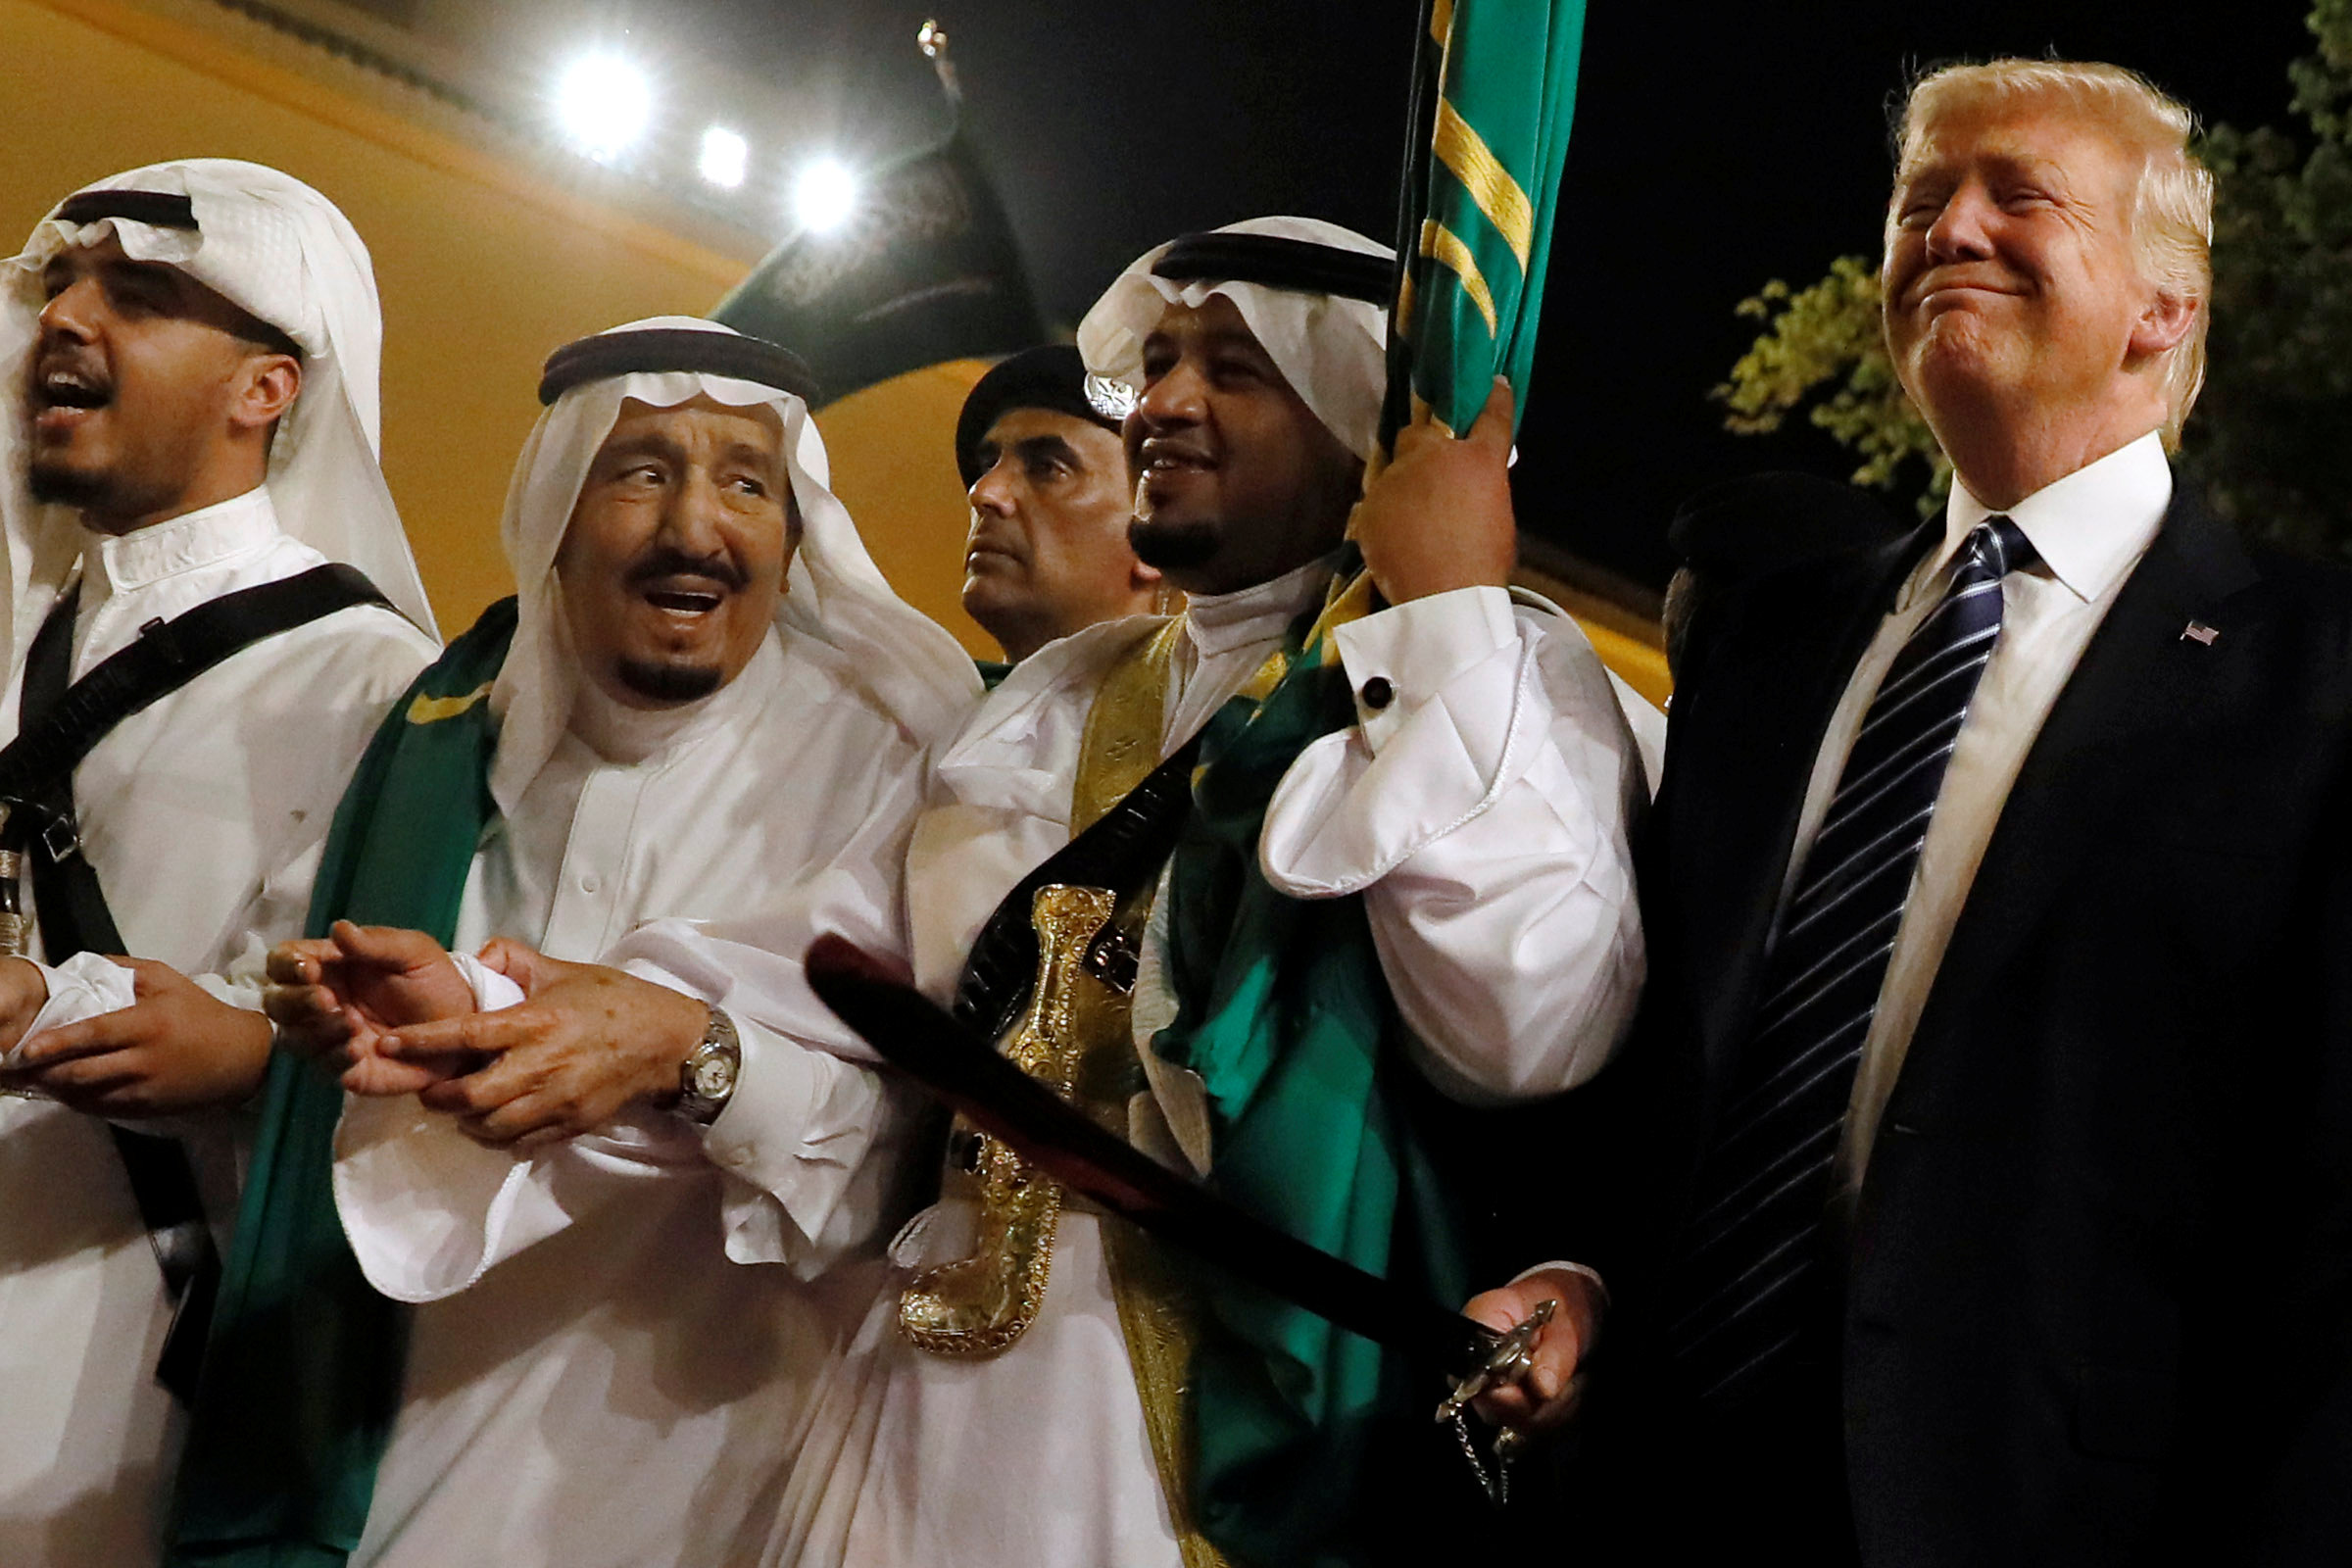 واشنطن بوست: ترامب أمر السعودية بتمويل حملة عسكرية "سرية للغاية"